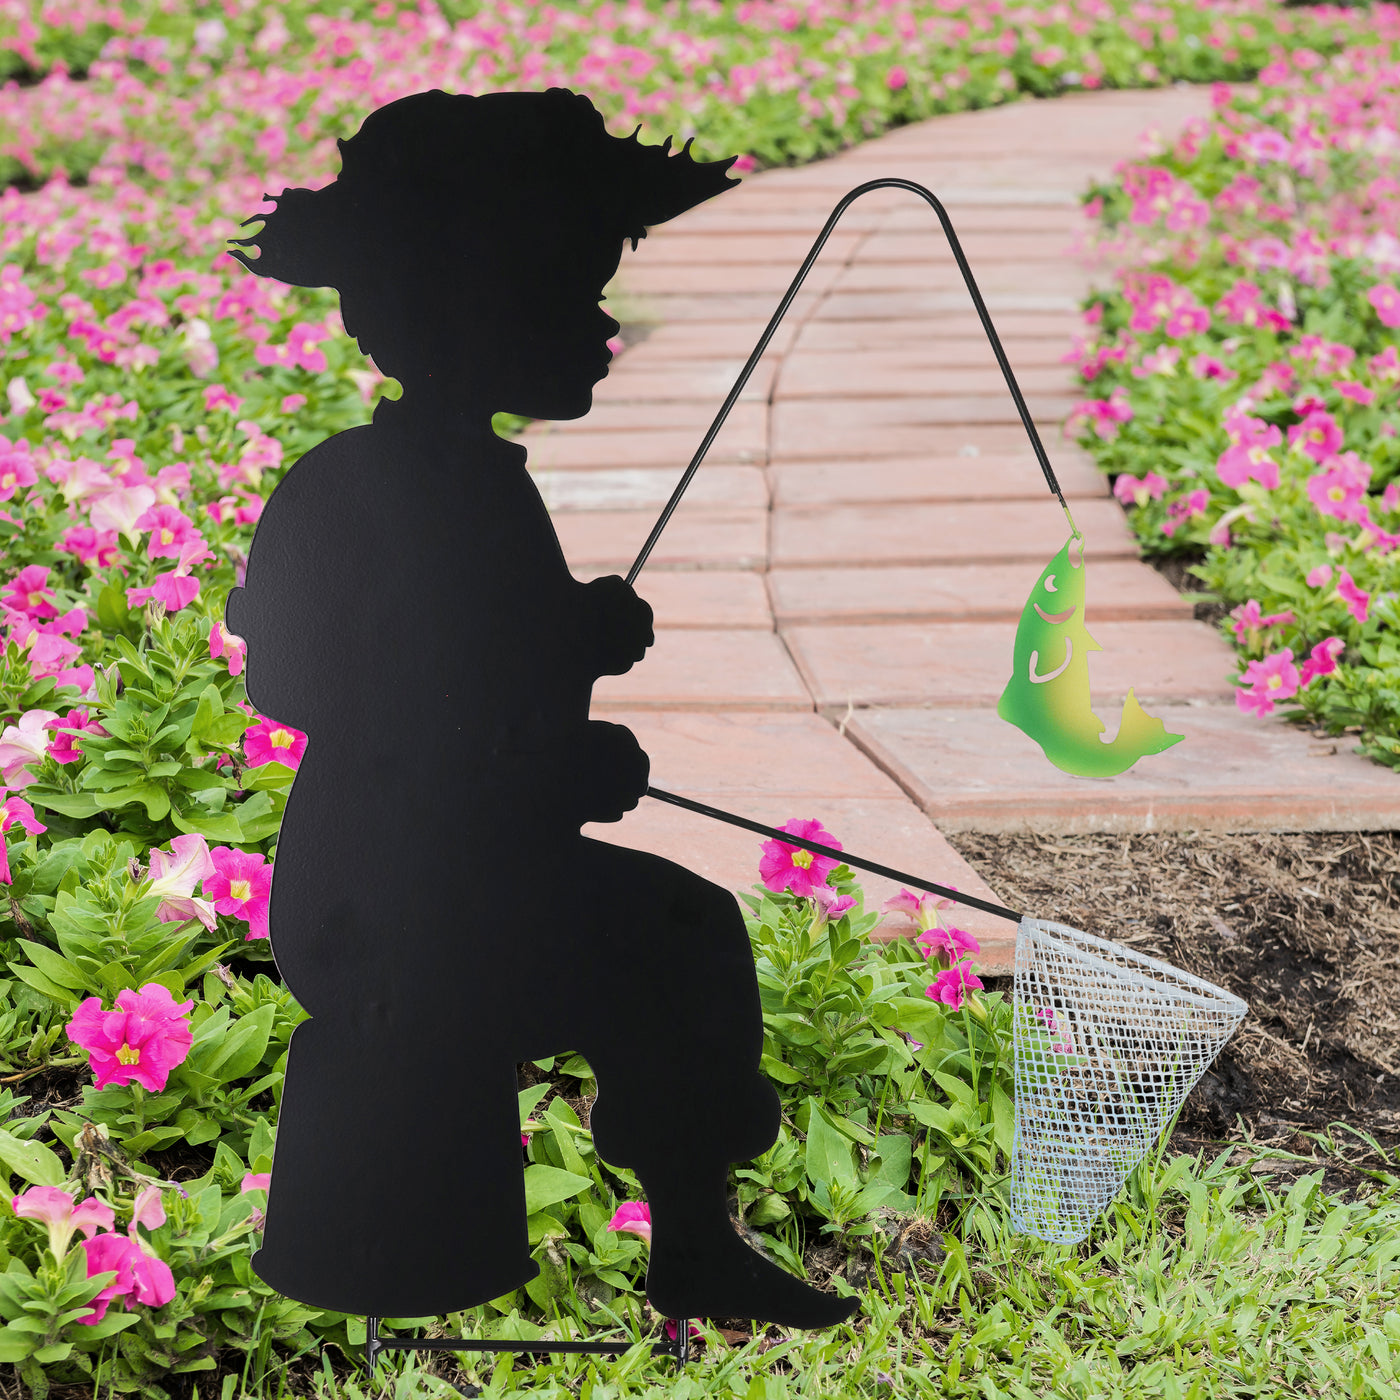 Stamped Metal Fishing Boy Silhouette Garden Stake